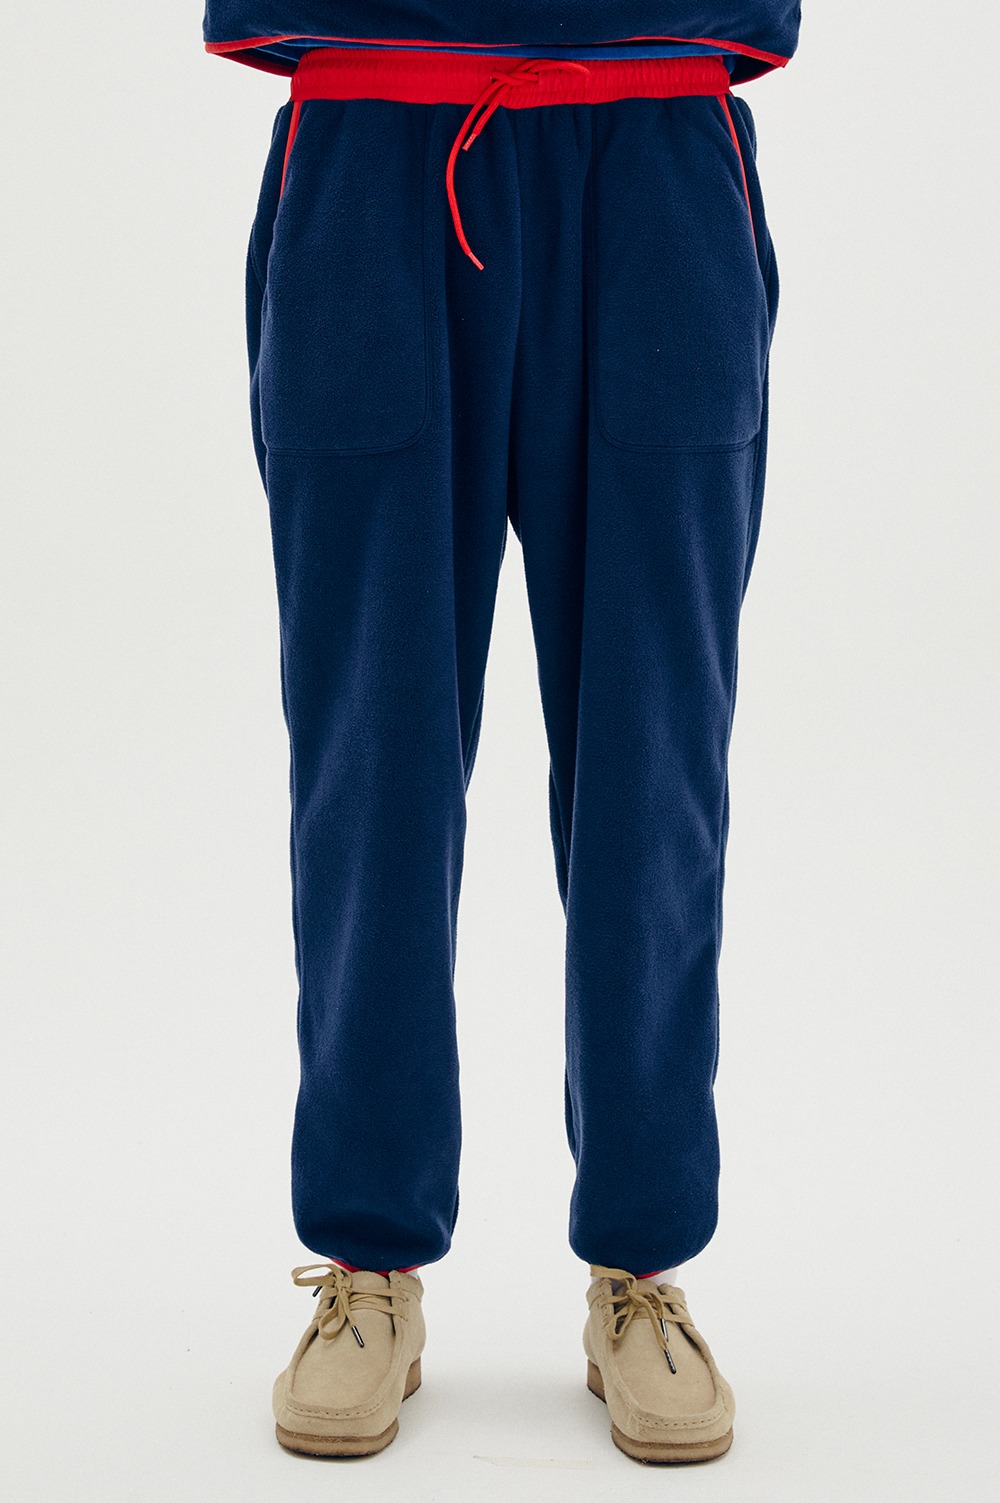 clove - [22FW clove] Colored Fleece Pants_Men (Navy)